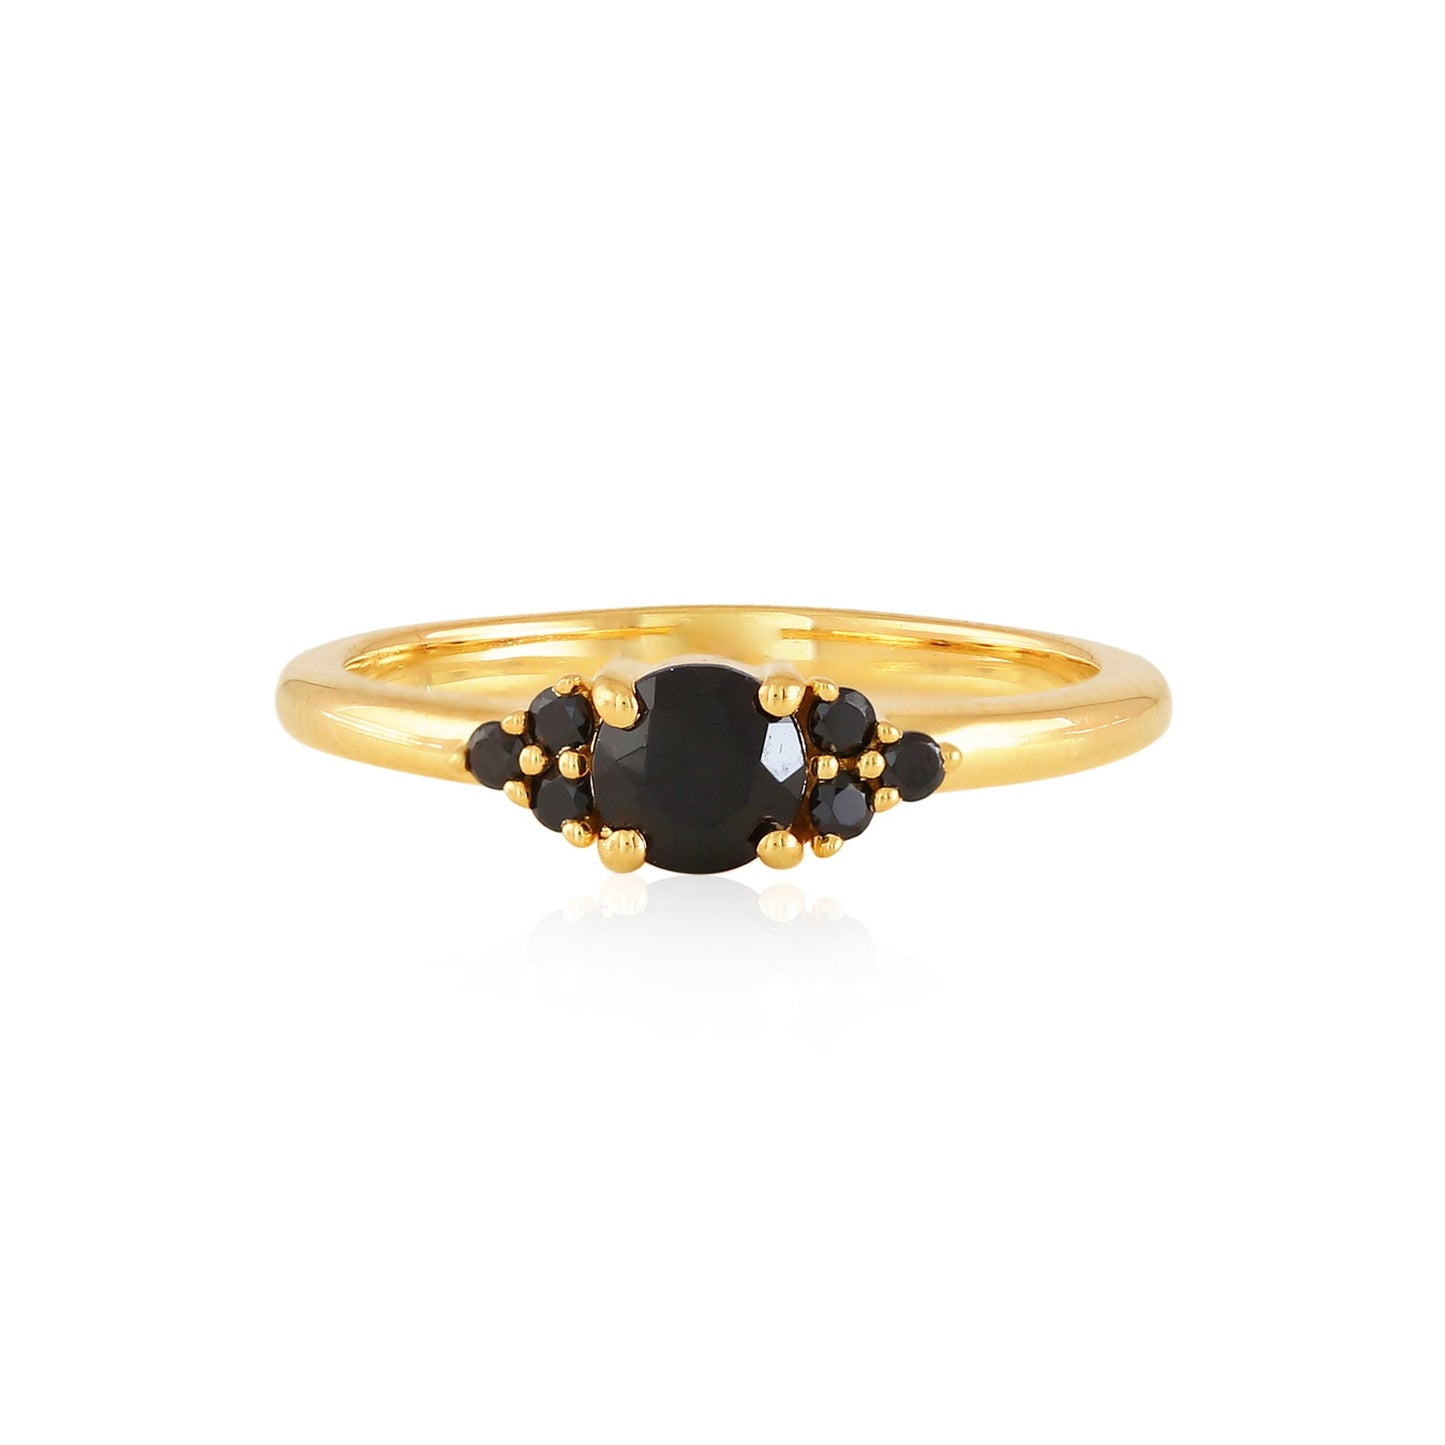 Cluster Black Spinel Ring - 18k Gold Vermeil